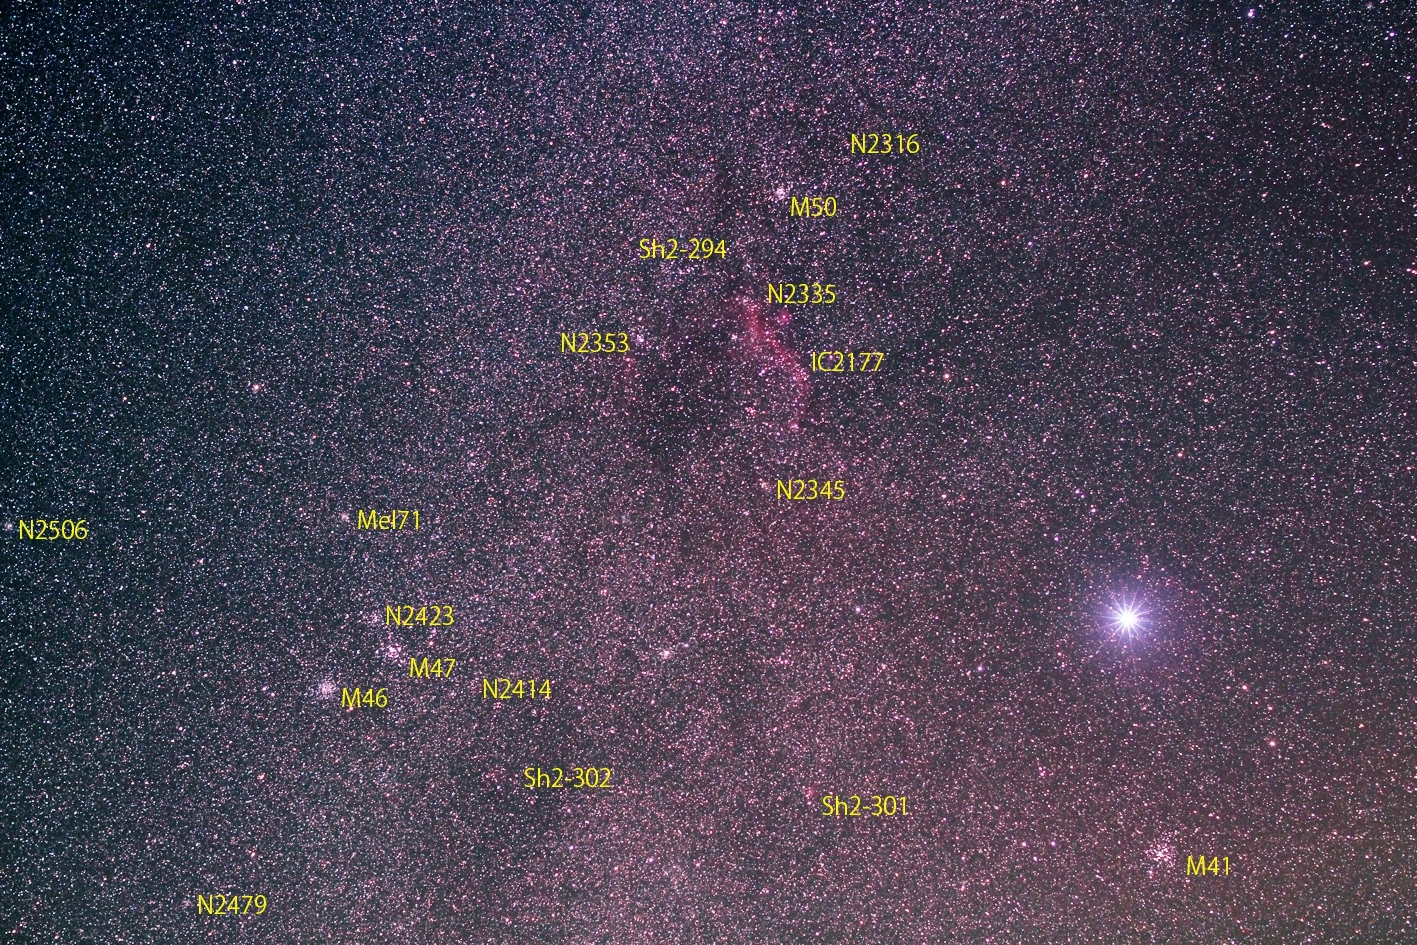 おおいぬ座 とも座の星雲星団 その1 By Alphavir 天体写真ギャラリー